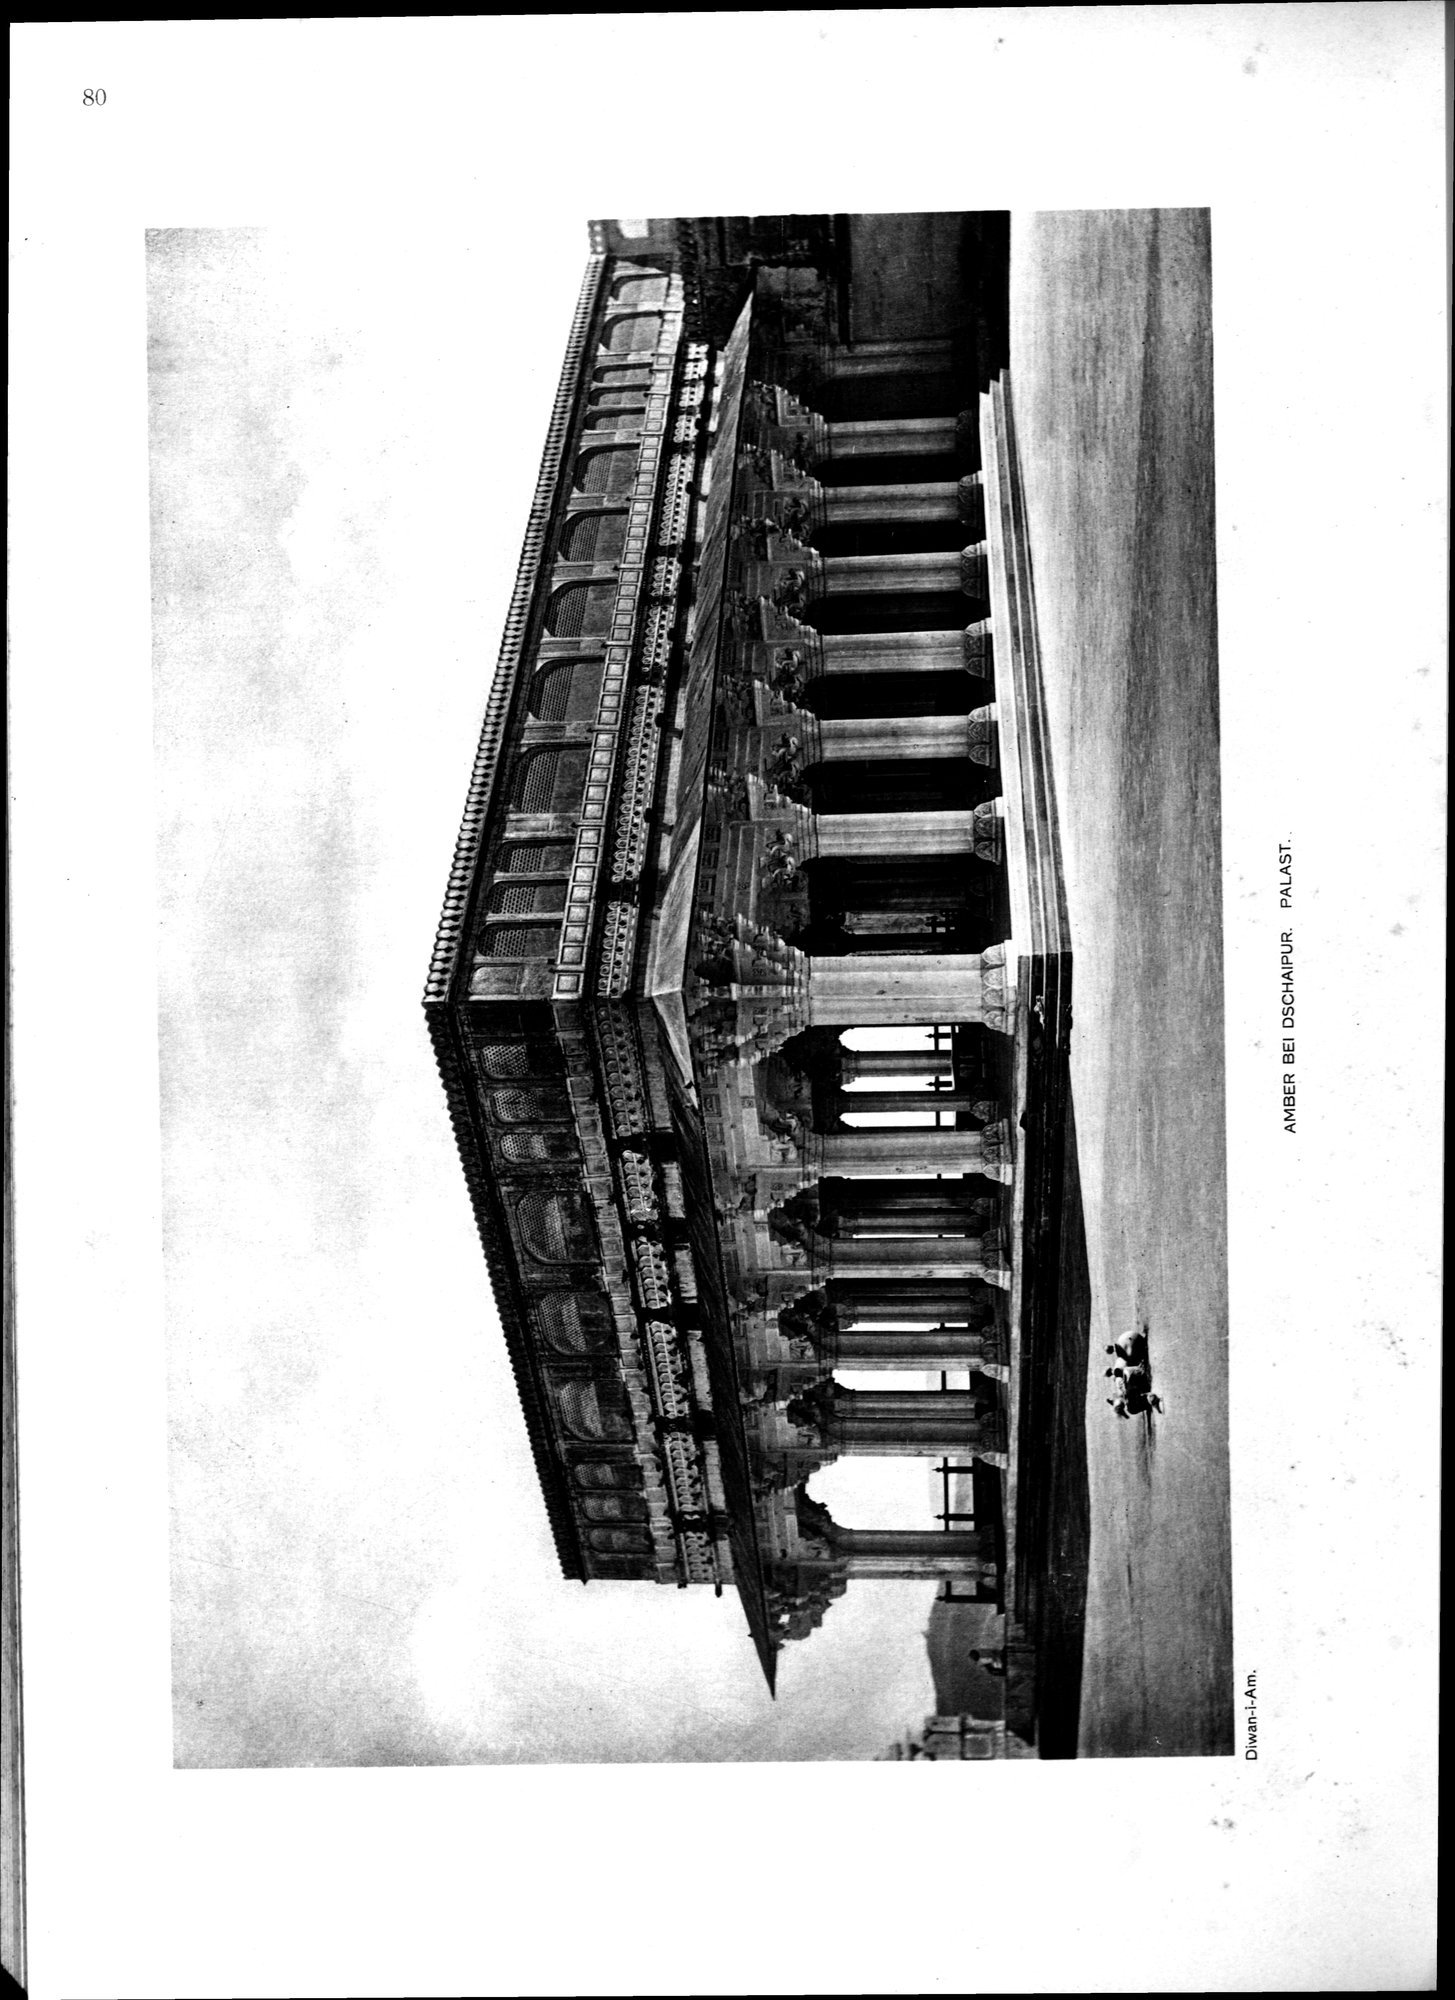 Indische Palaste und Wohnhauser : vol.1 / Page 196 (Grayscale High Resolution Image)